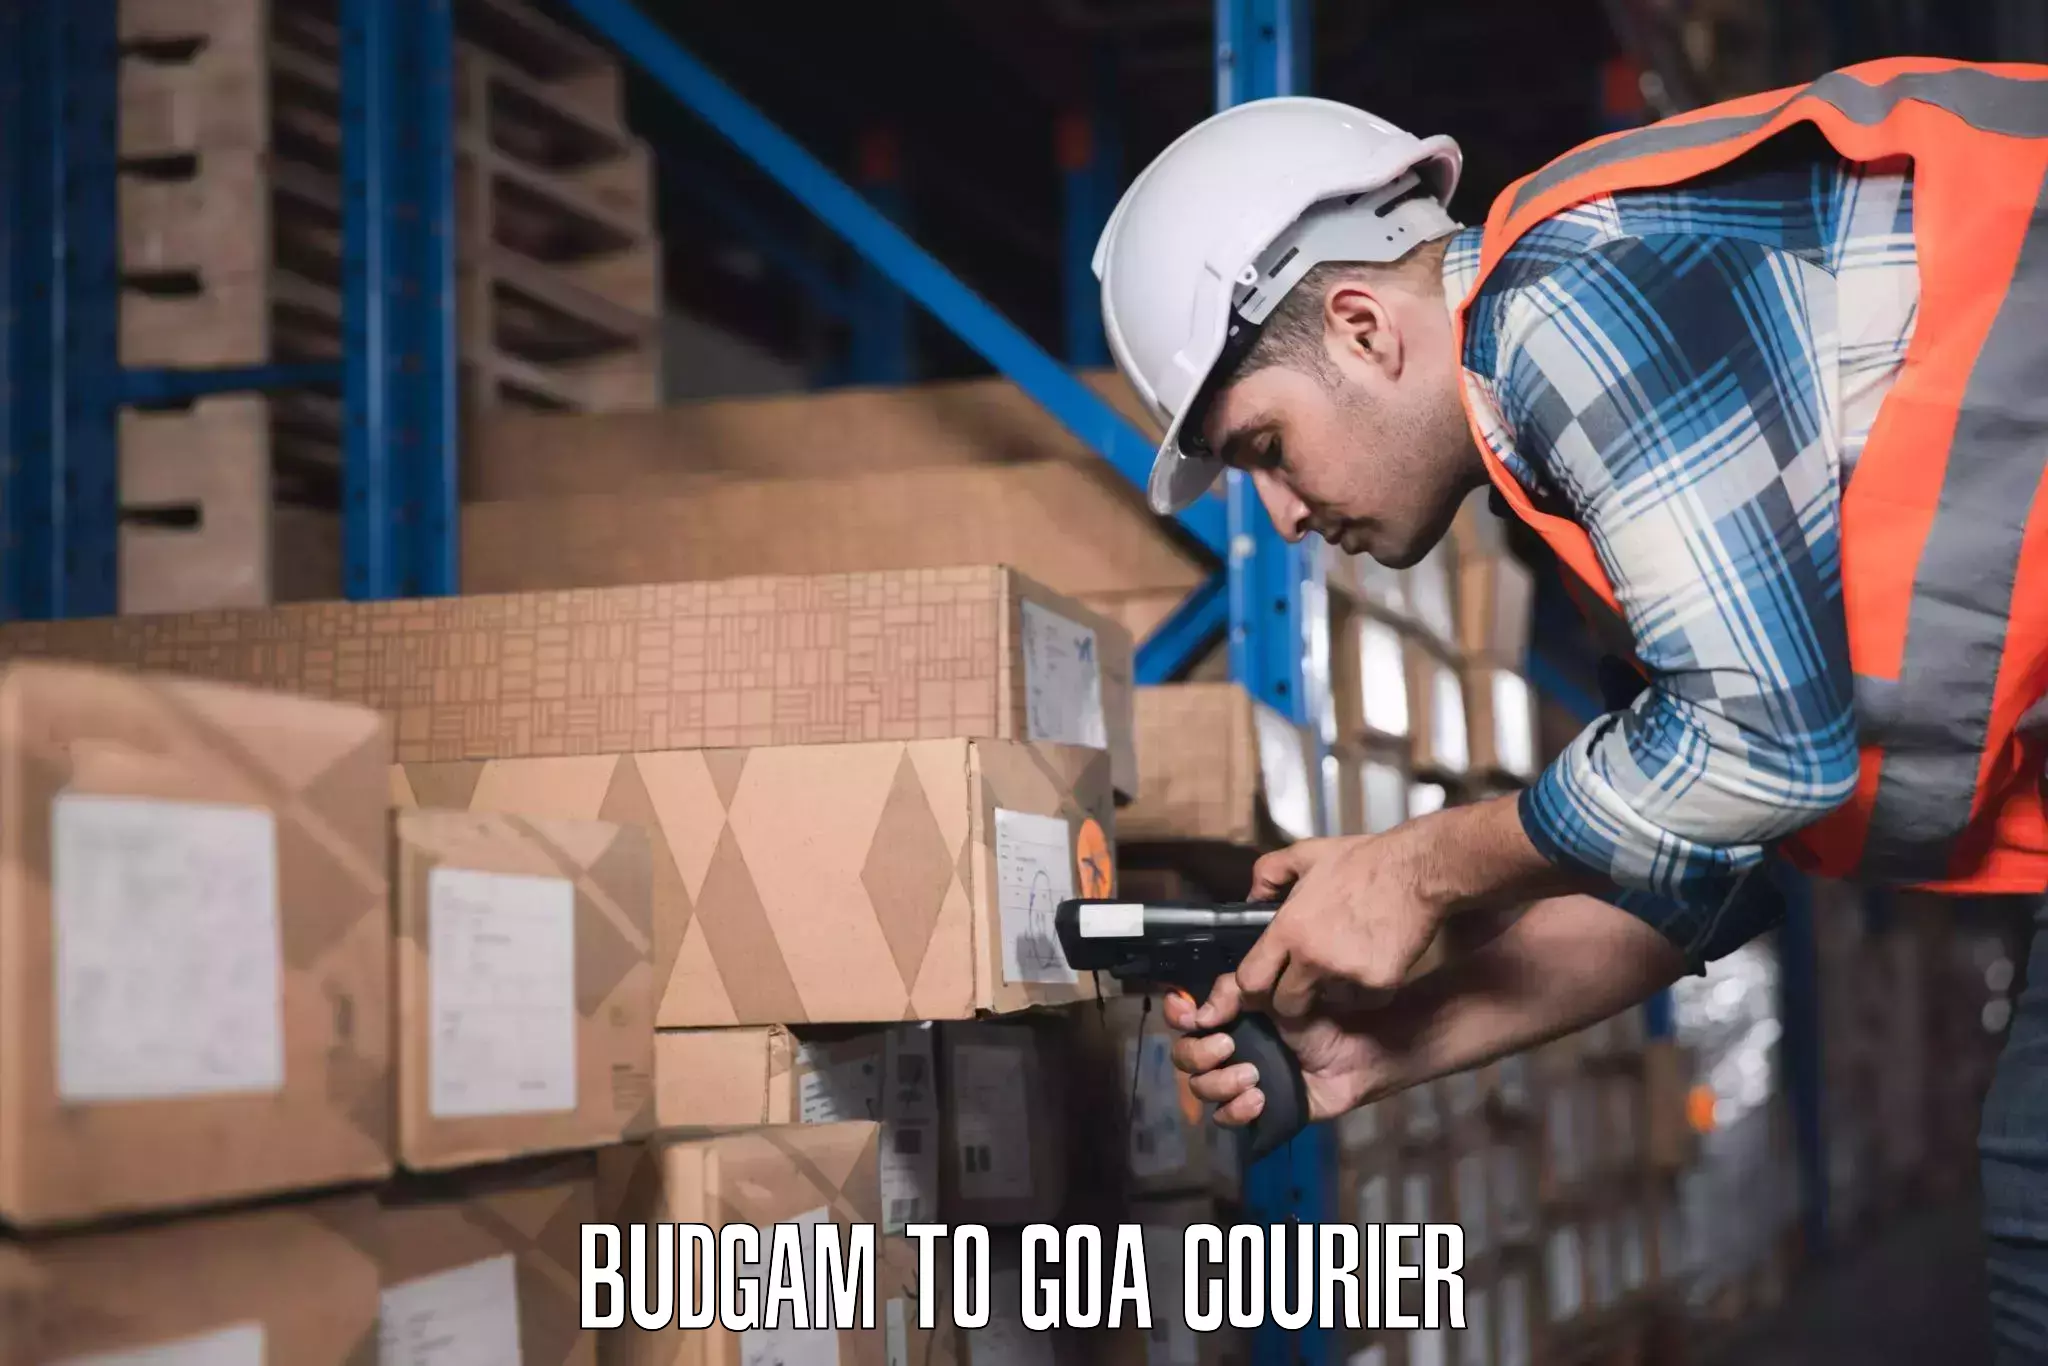 Budget-friendly baggage courier Budgam to Mormugao Port